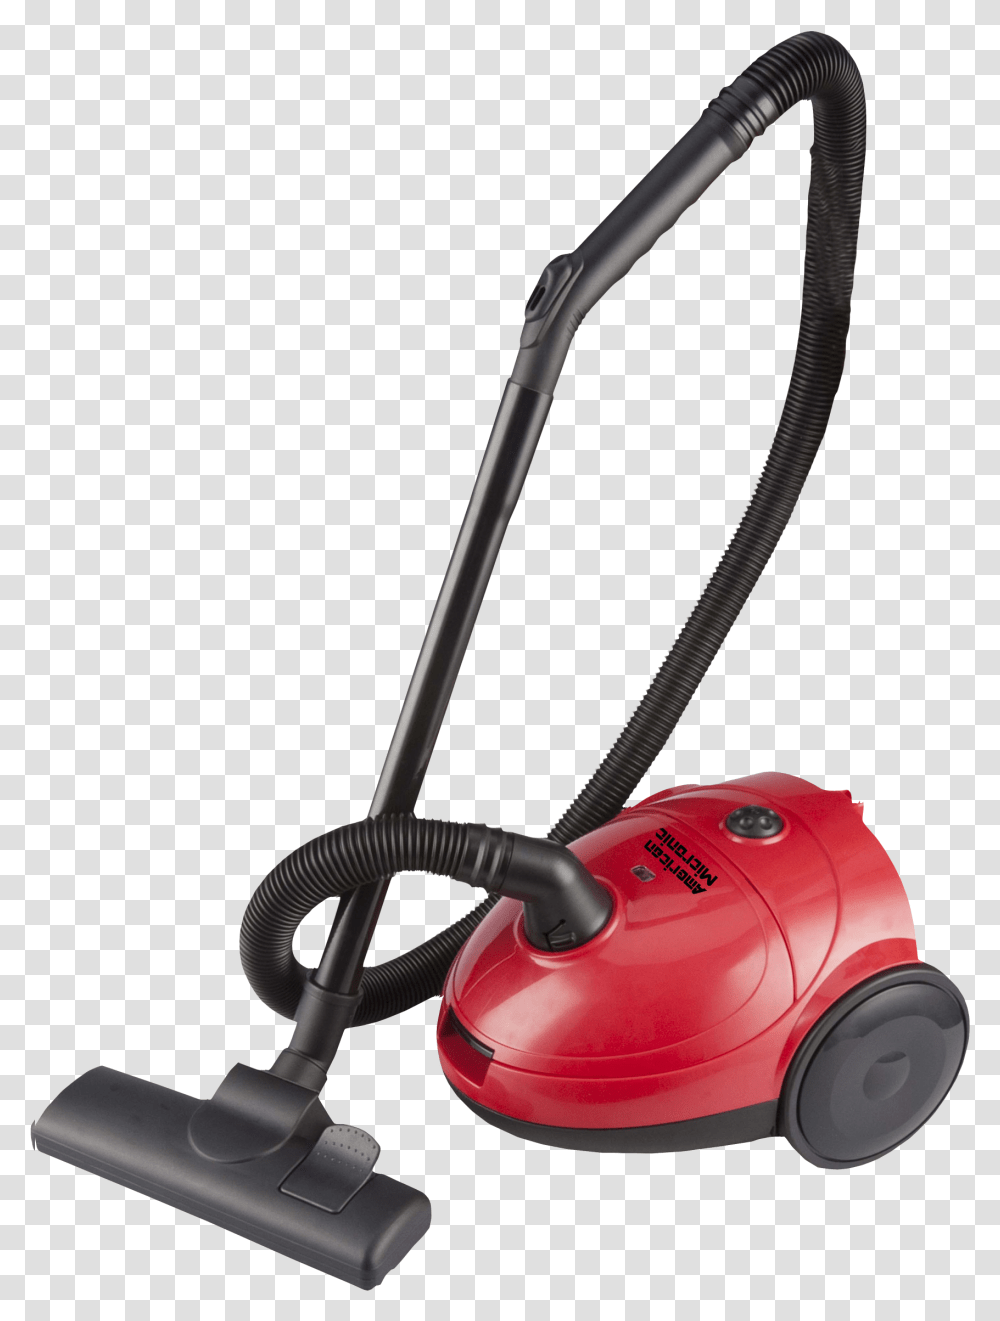 Vacuum Vacuum Images, Appliance, Vacuum Cleaner, Lawn Mower, Tool Transparent Png